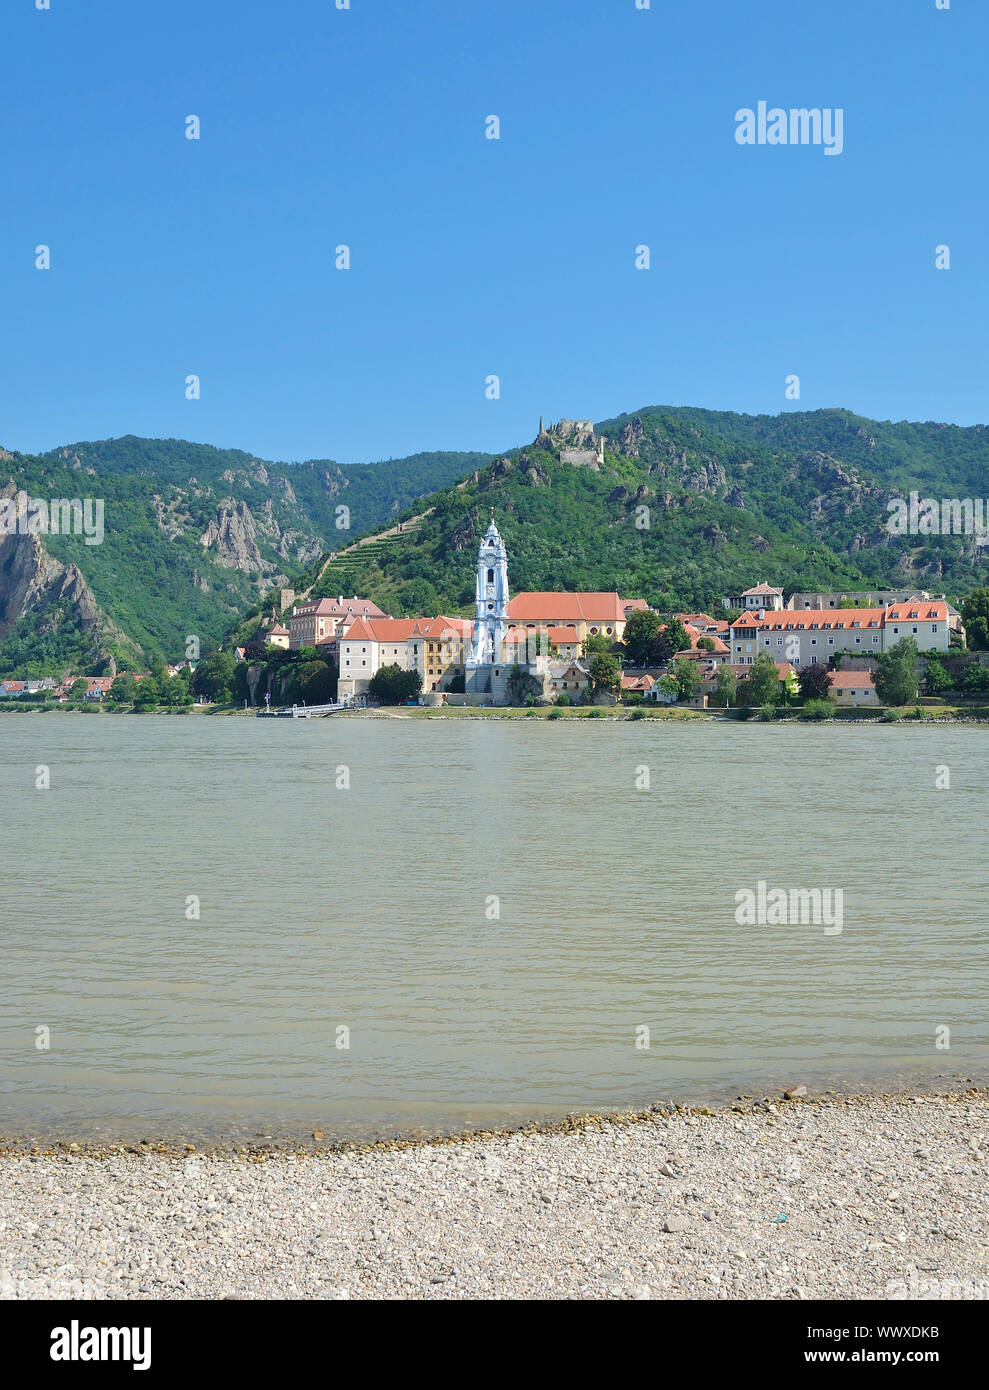 Village of Duernstein in Wachau,Danube Valley,lower Austria Stock Photo